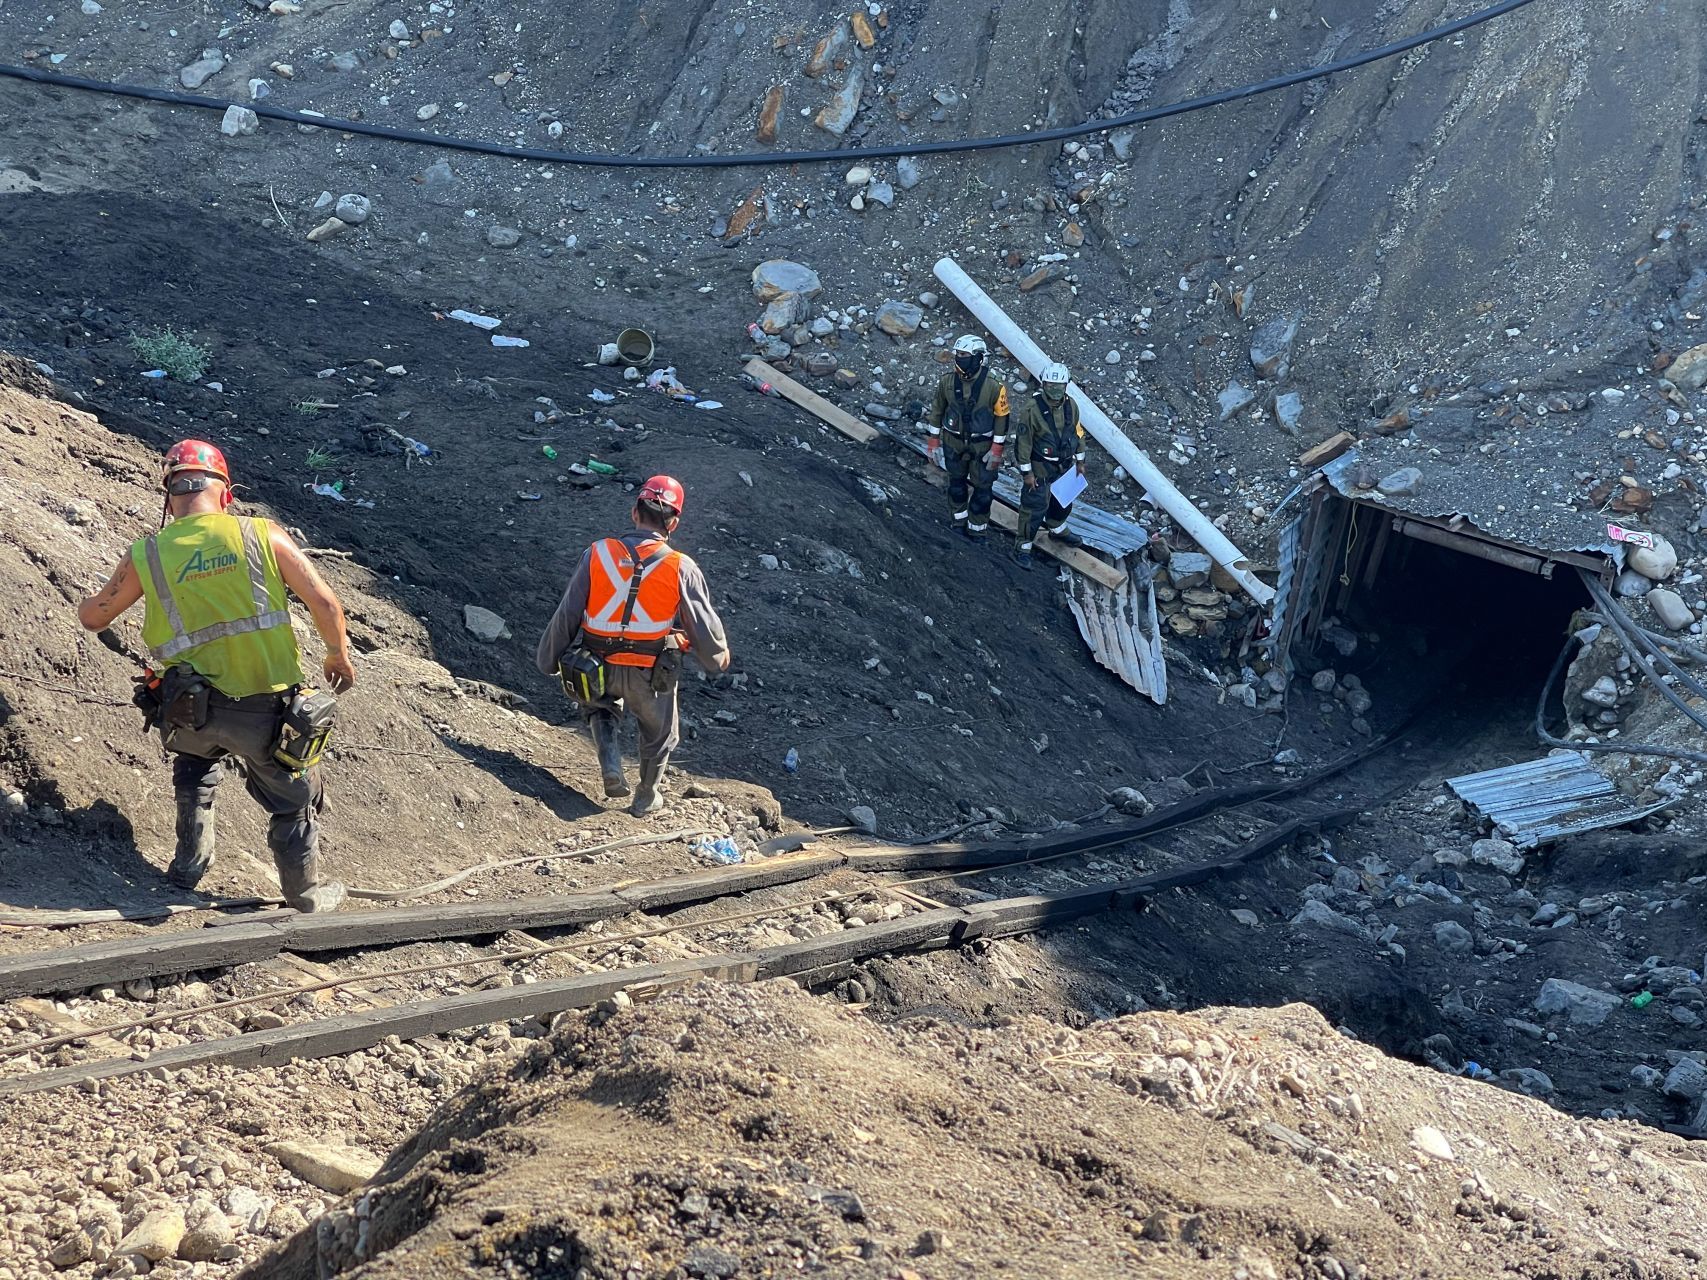 Recuperan quinto cuerpo de trabajador tras derrumbe en mina de Coahuila